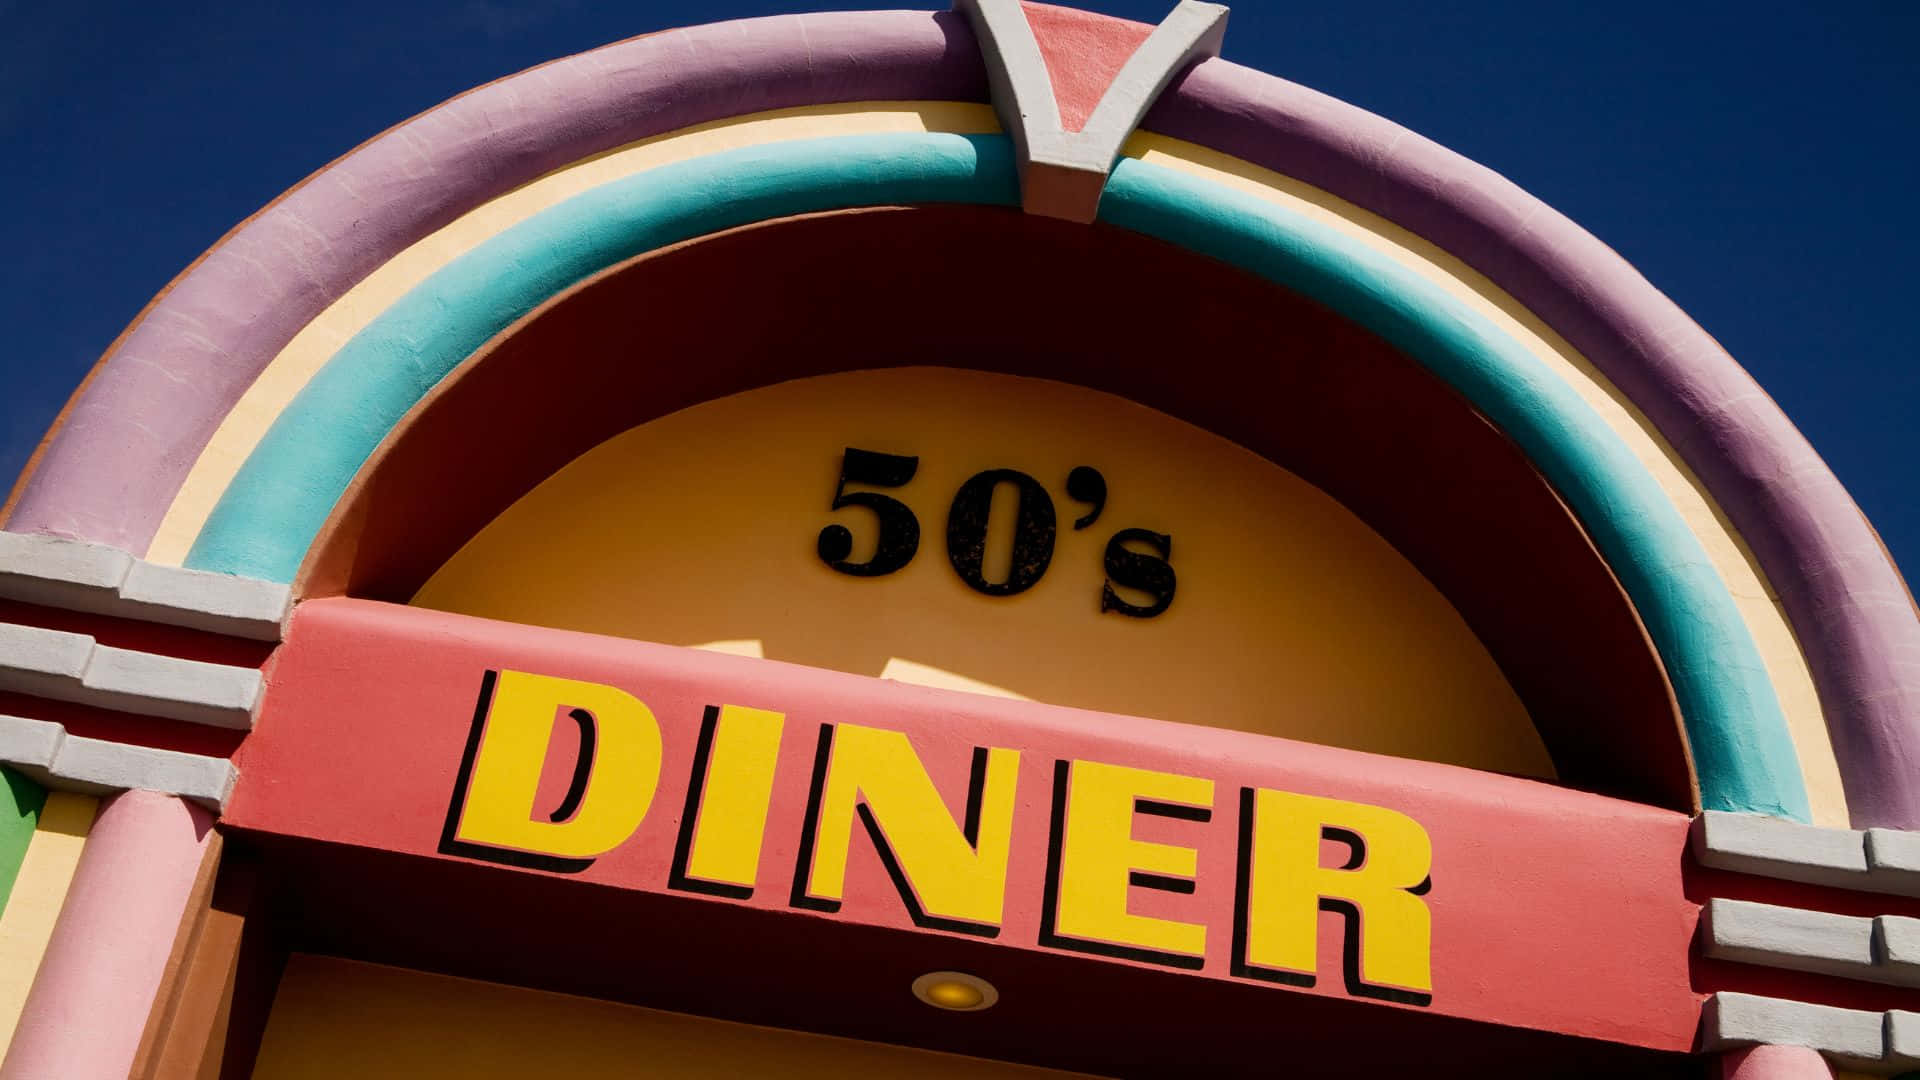 Luminosoe Accogliente Diner In Stile Anni '50 Con Luci Al Neon E Un'atmosfera Accogliente